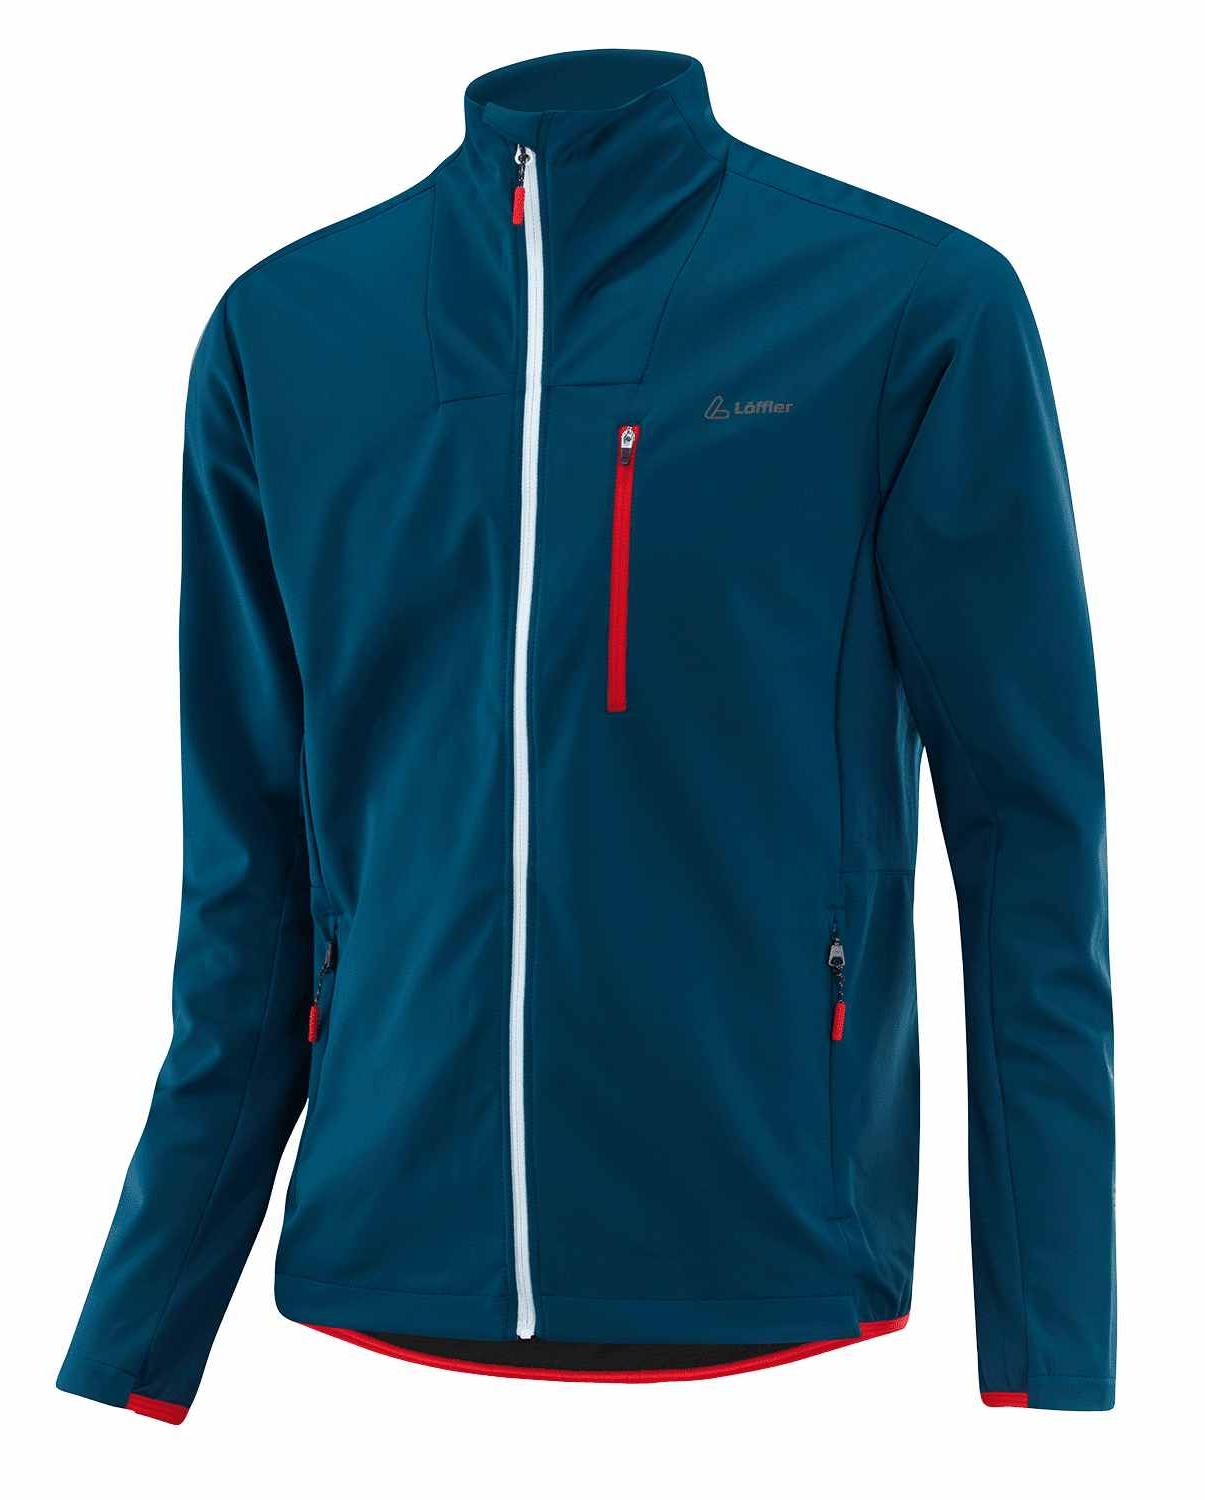 Спортивная куртка мужская Loeffler Nordic Txs синяя 54